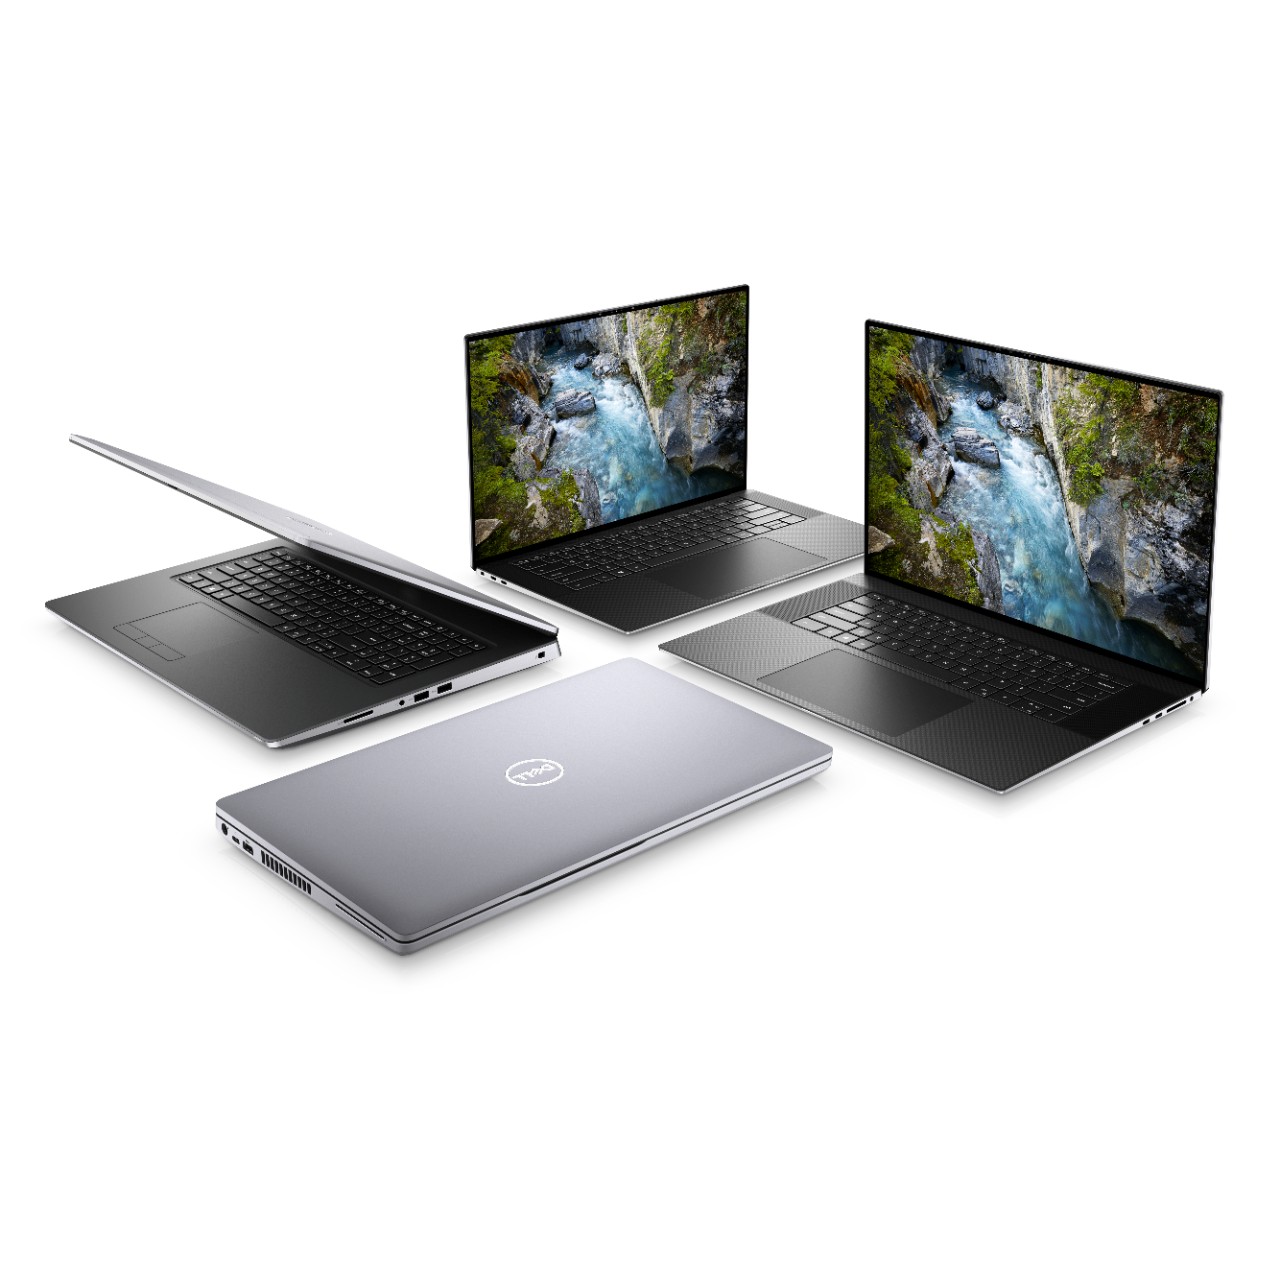 Dell ra mắt mẫu laptop và PC cập nhật Intel core i thế hệ 10 dành cho doanh nghiệp